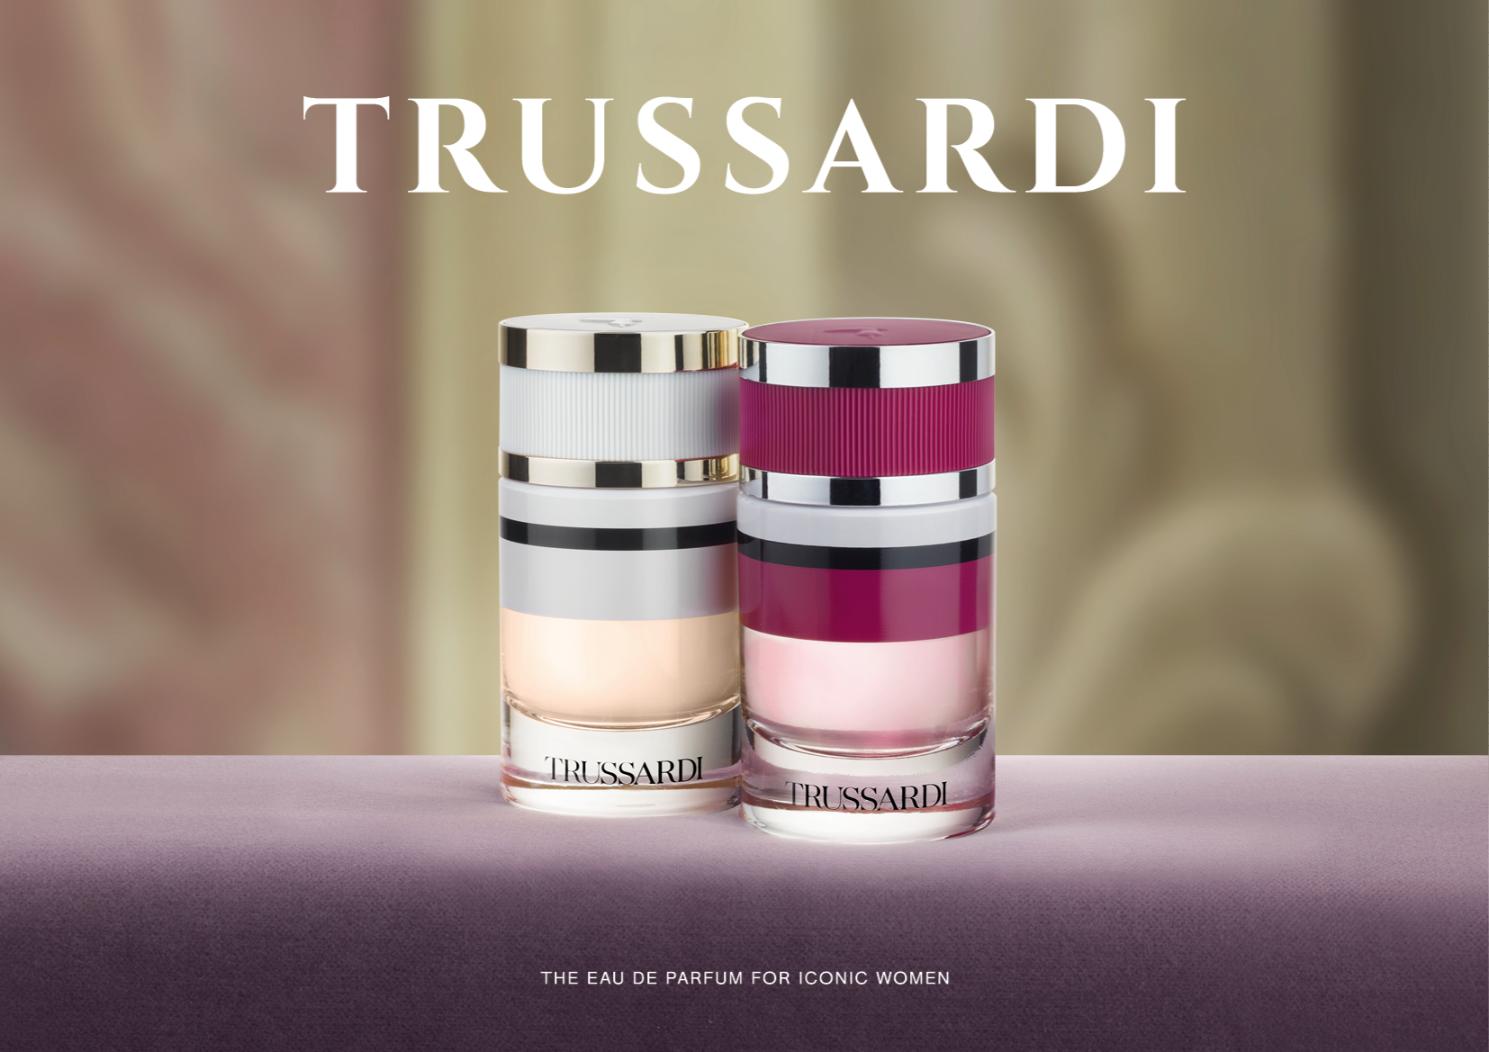 Hình 1 1 1 Khám phá bí mật đằng sau bộ đôi mùi hương mới của thương hiệu Trussardi